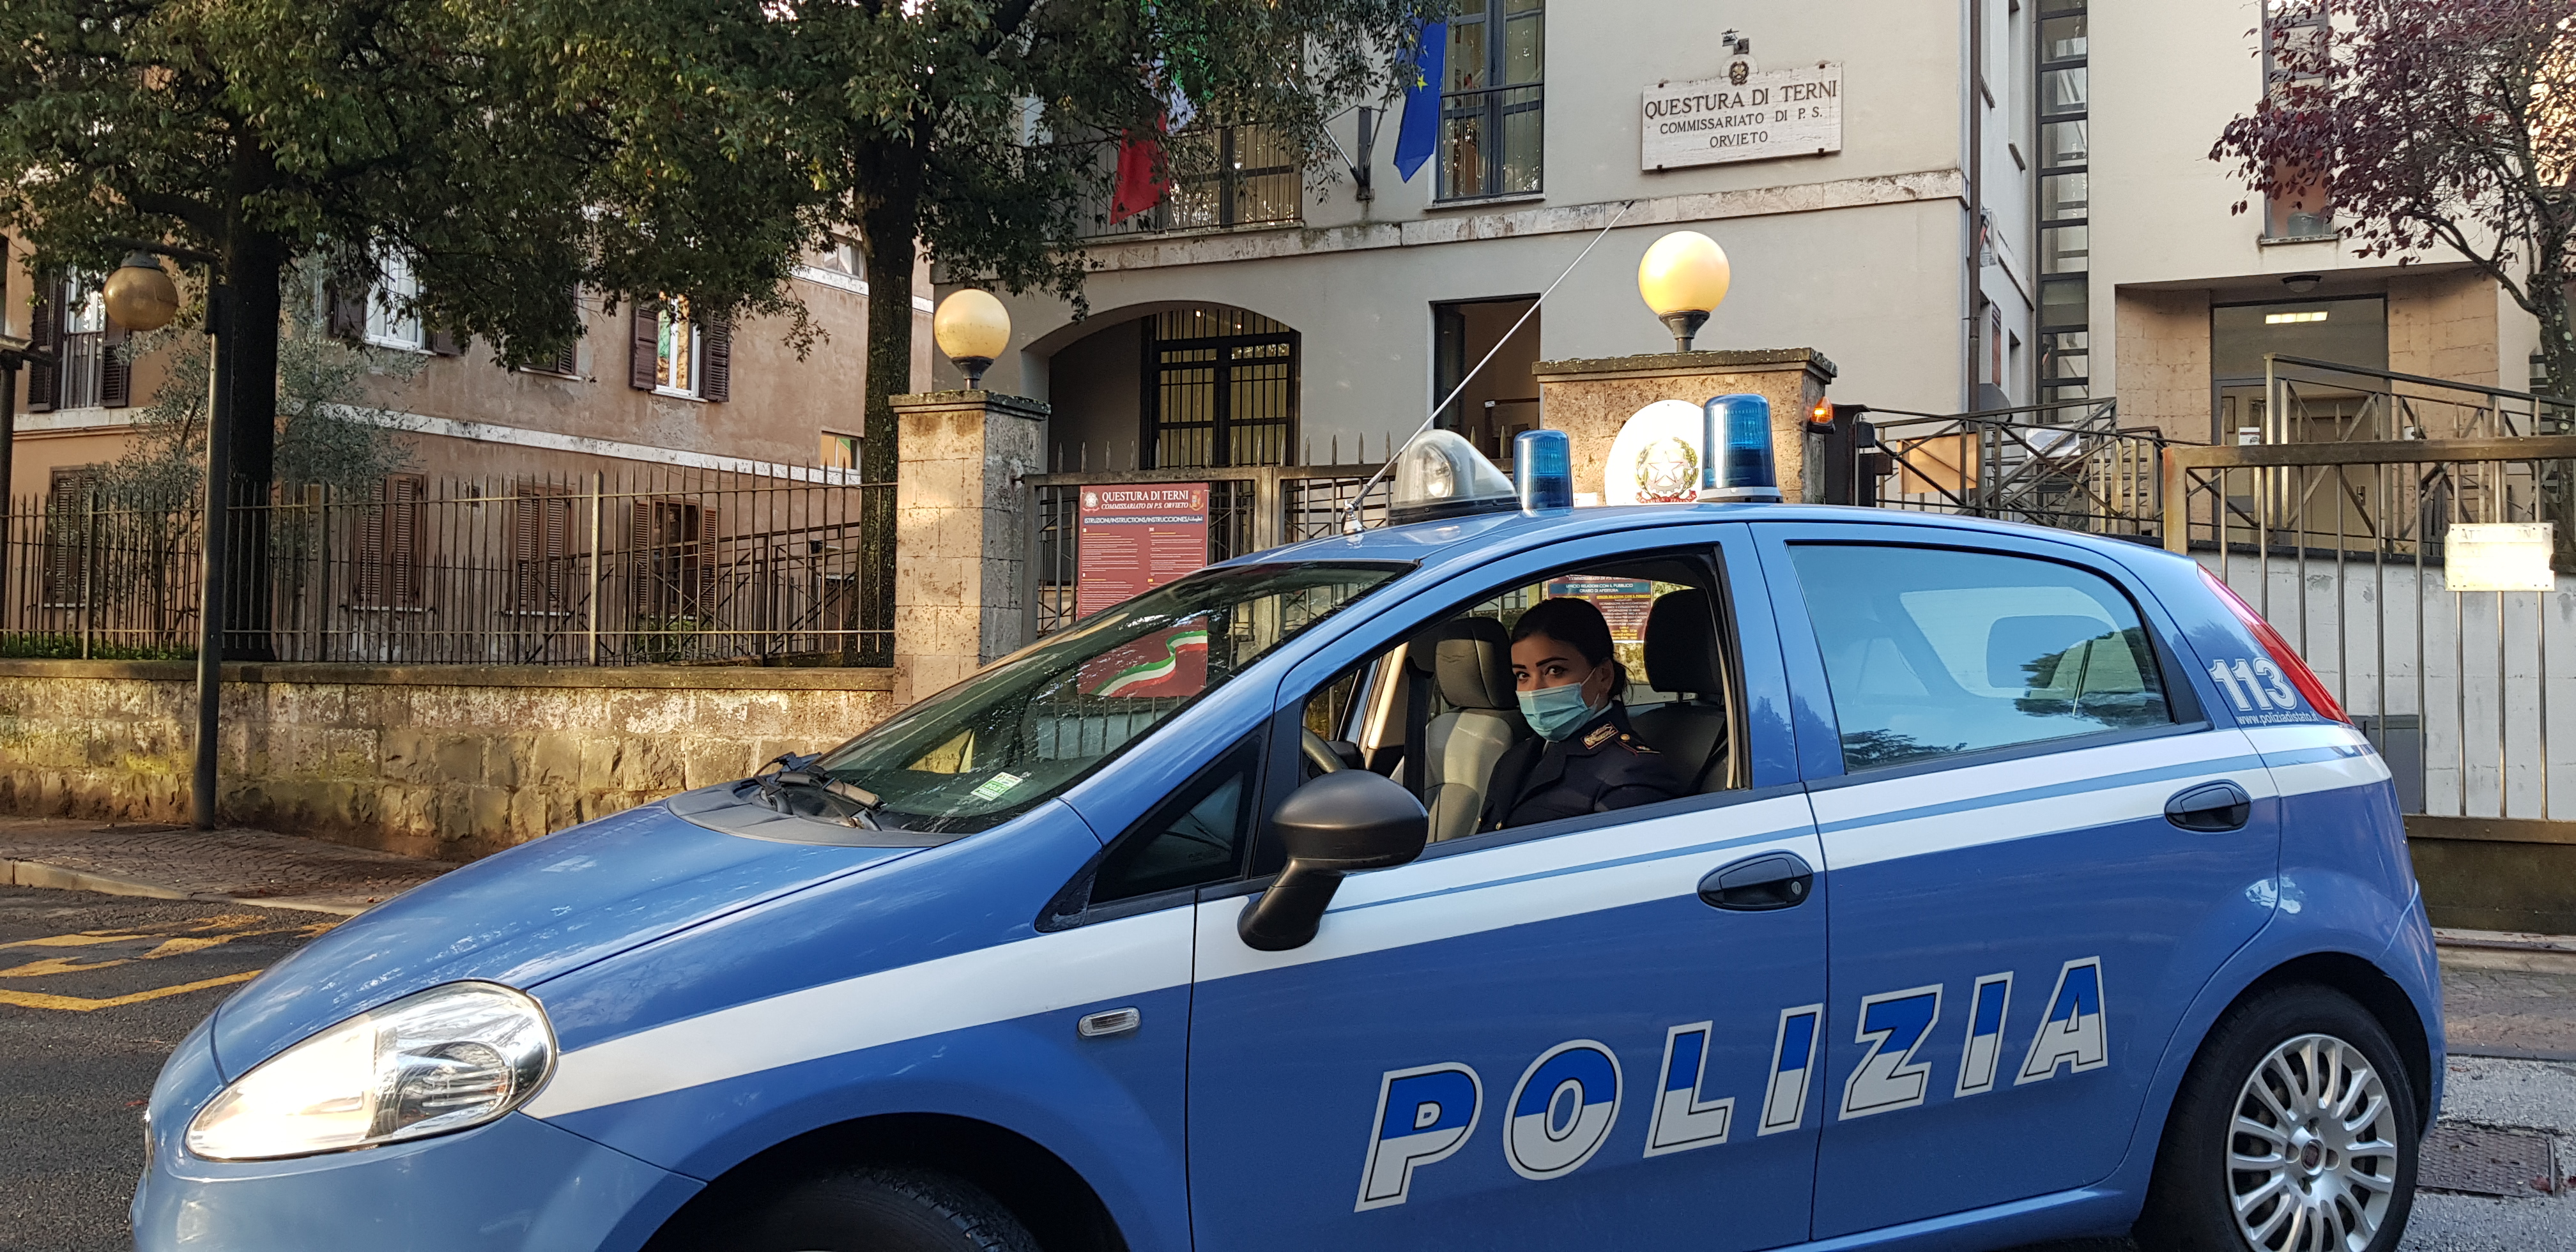 Sede Polizia Orvieto